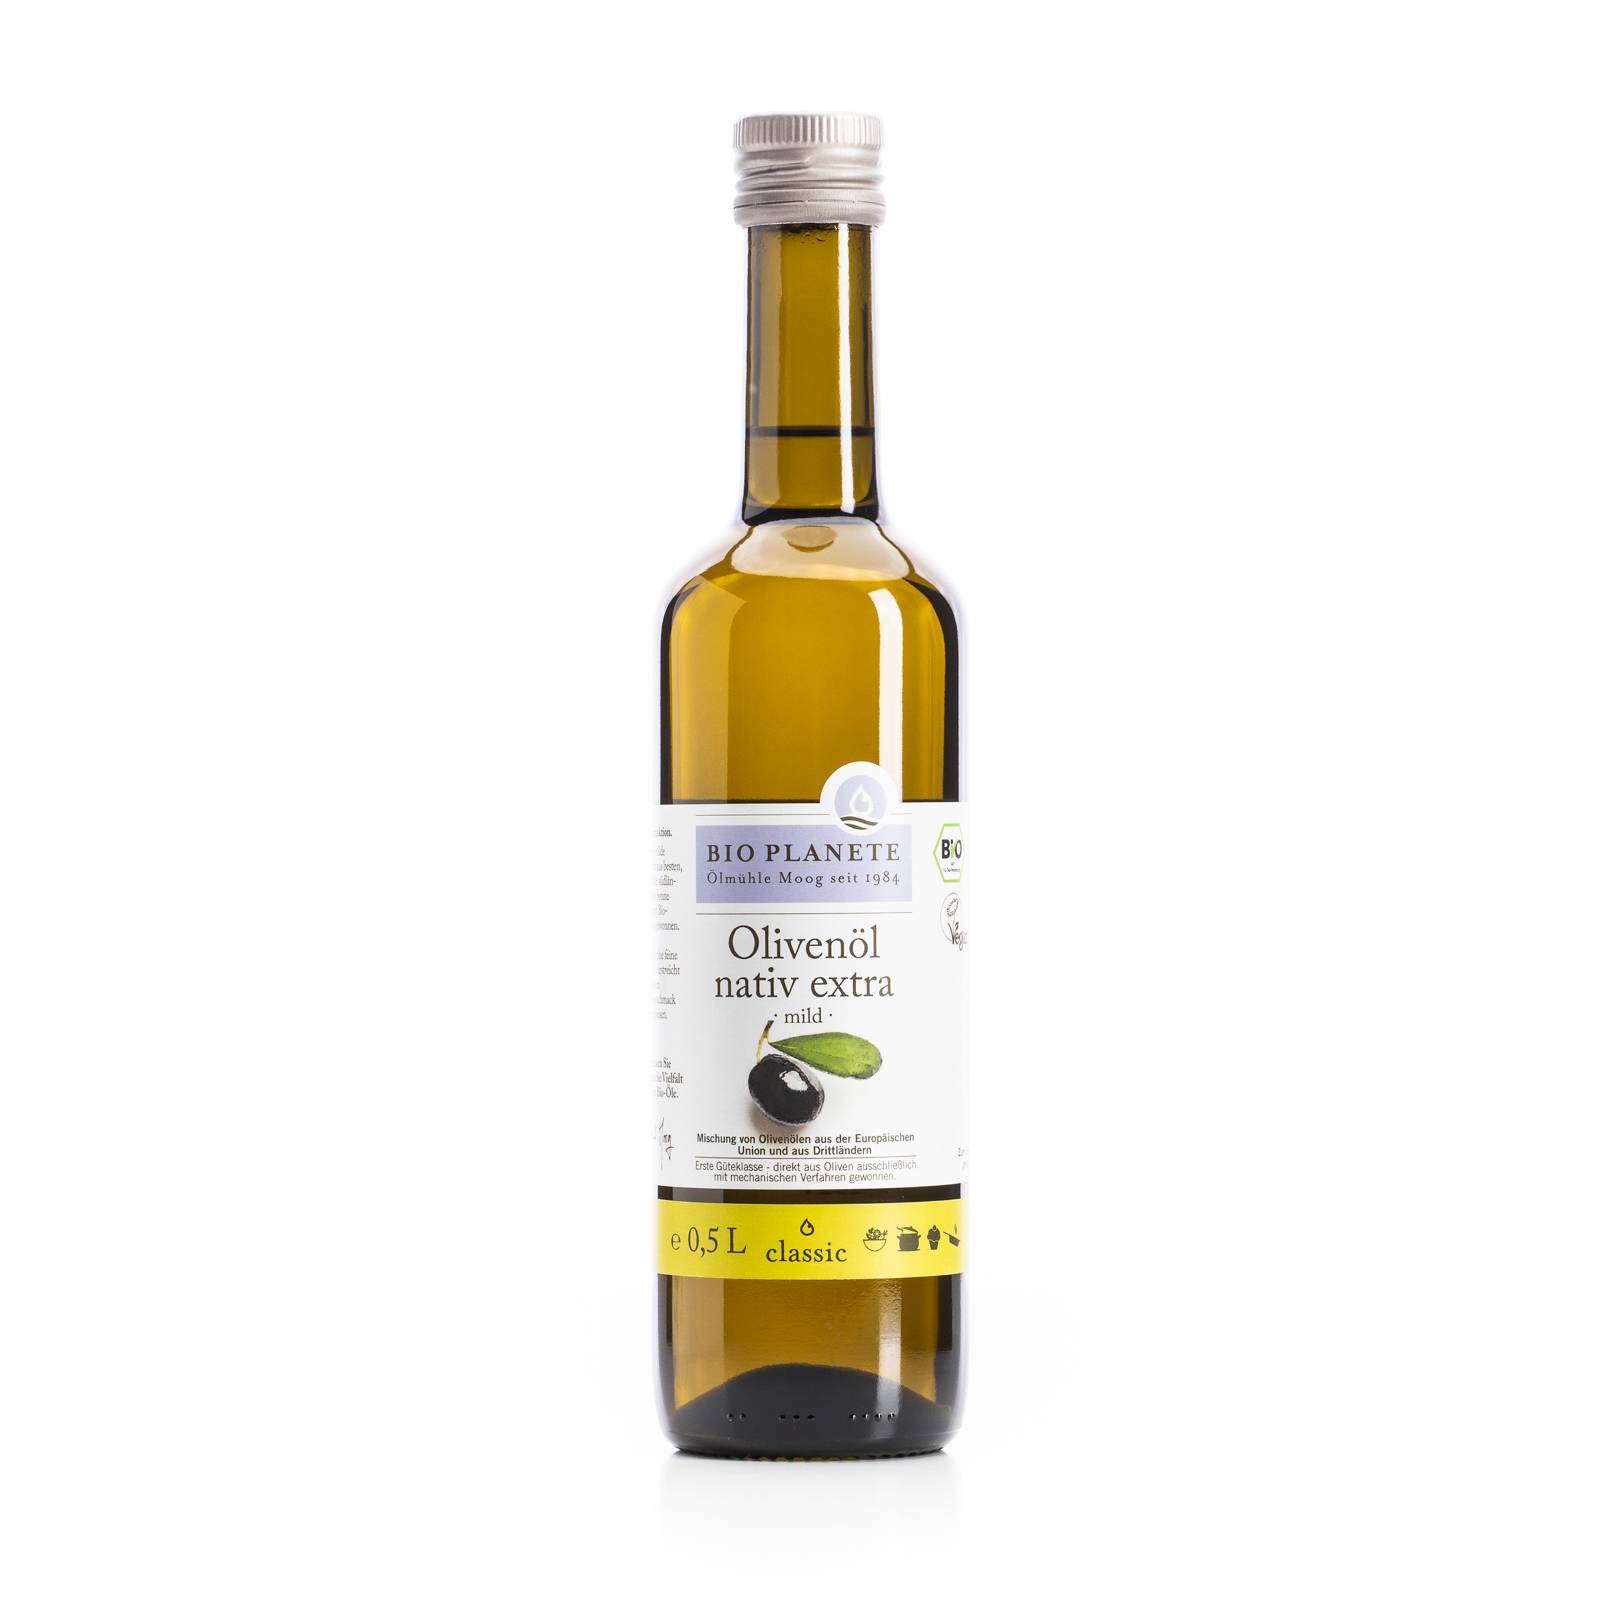 l_bio_planete_olivenoel_nativ_extra_500ml Oele & Essig - Olivenöl nativ extra mild - Hofladen Altkö